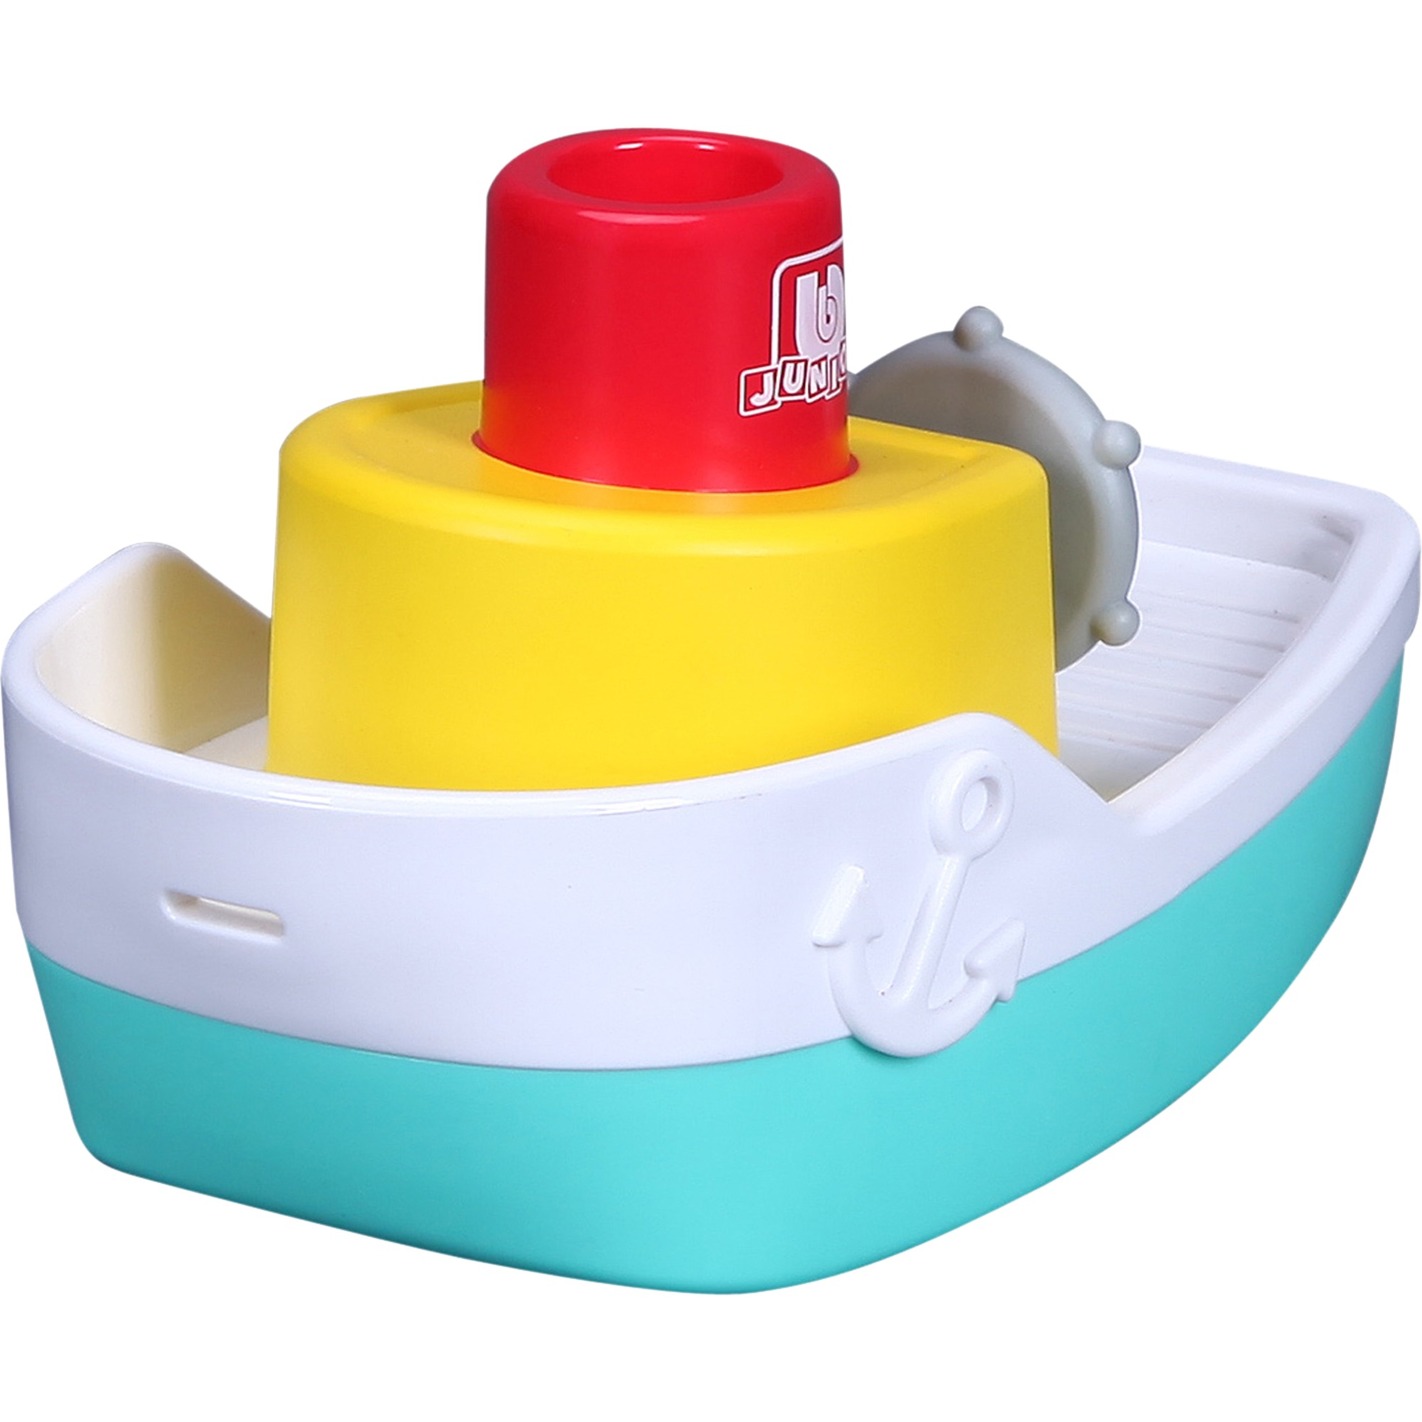 Image of Alternate - BB Junior Spraying Tugboat, Badespielzeug online einkaufen bei Alternate